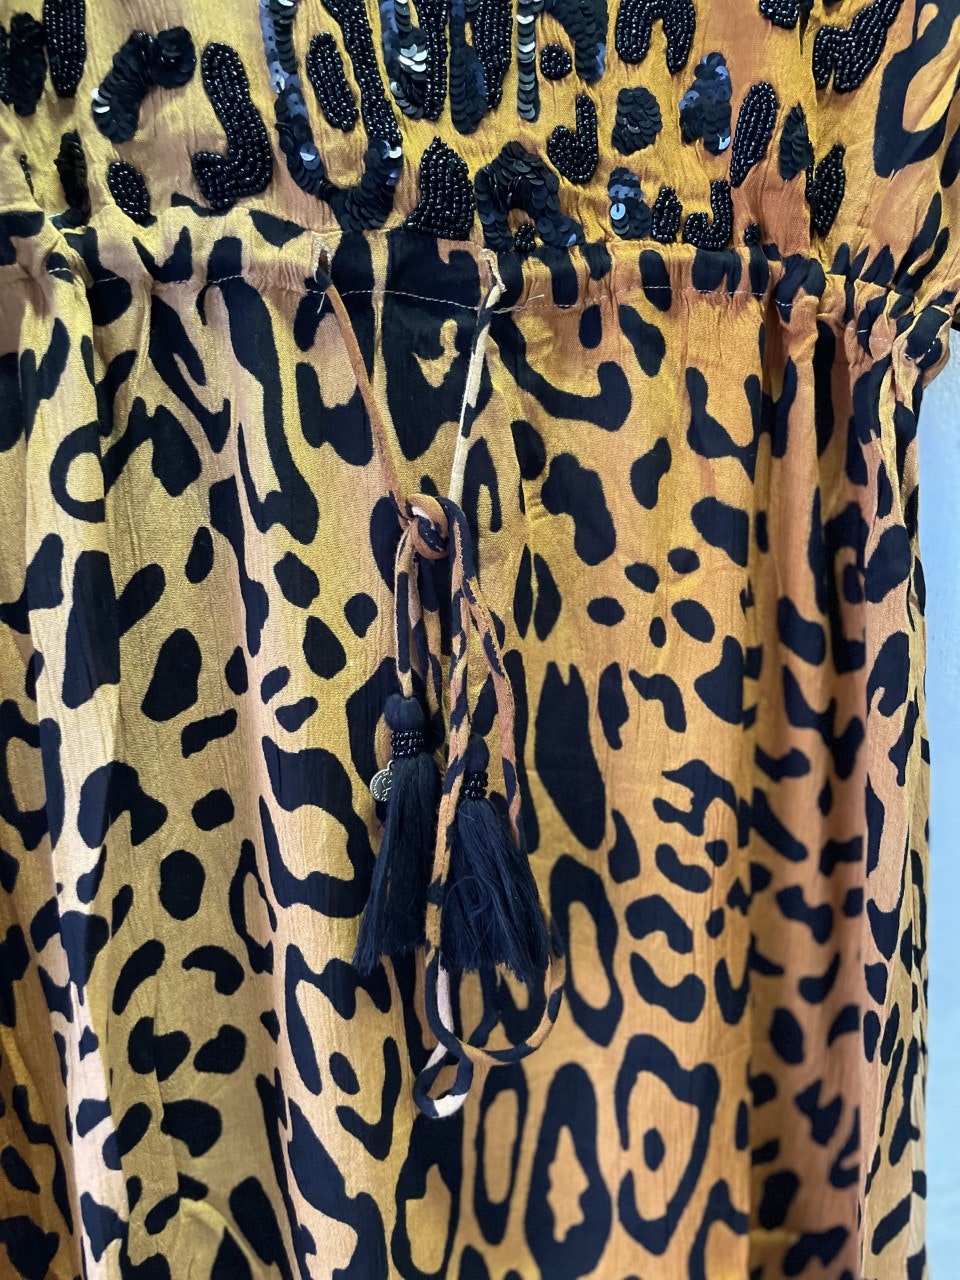 LOLA CASADEMUNT  " Leopard klänning " med kort ärm